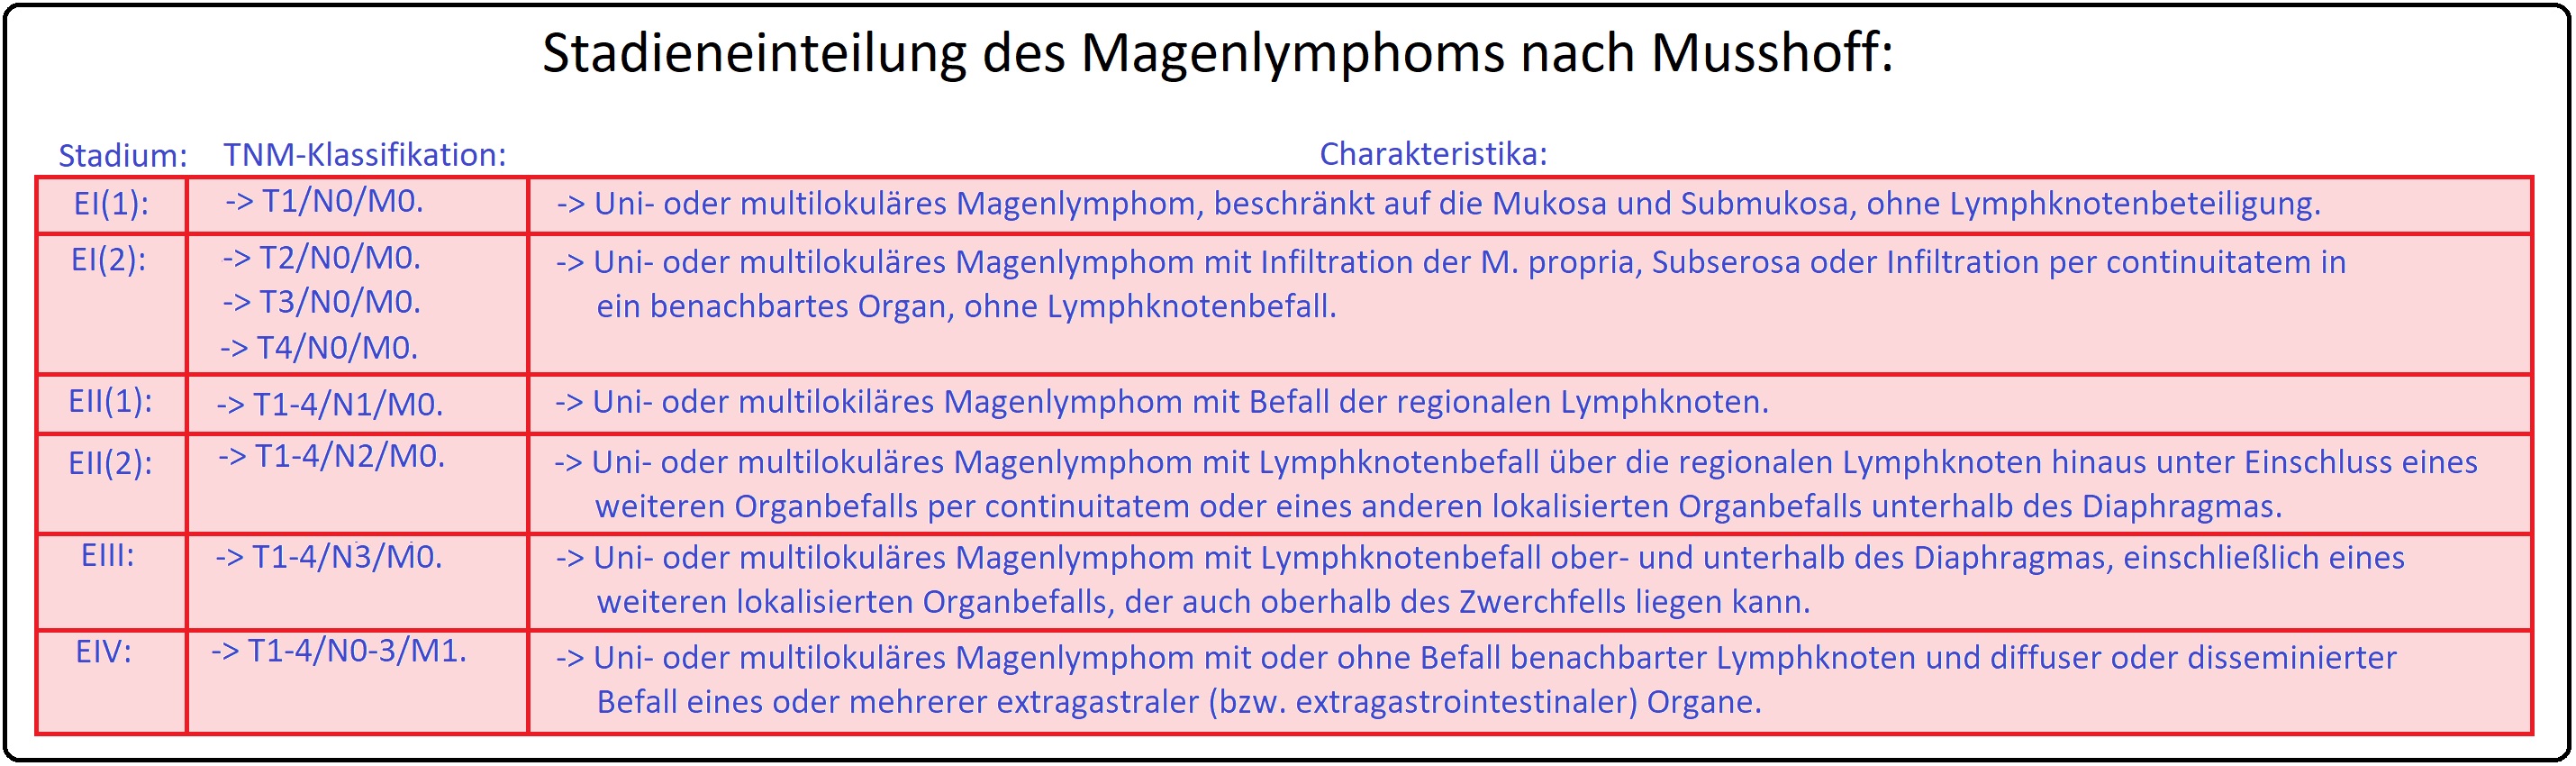 673 Stadieneinteilung des Magaenlymphoms nach Musshoff